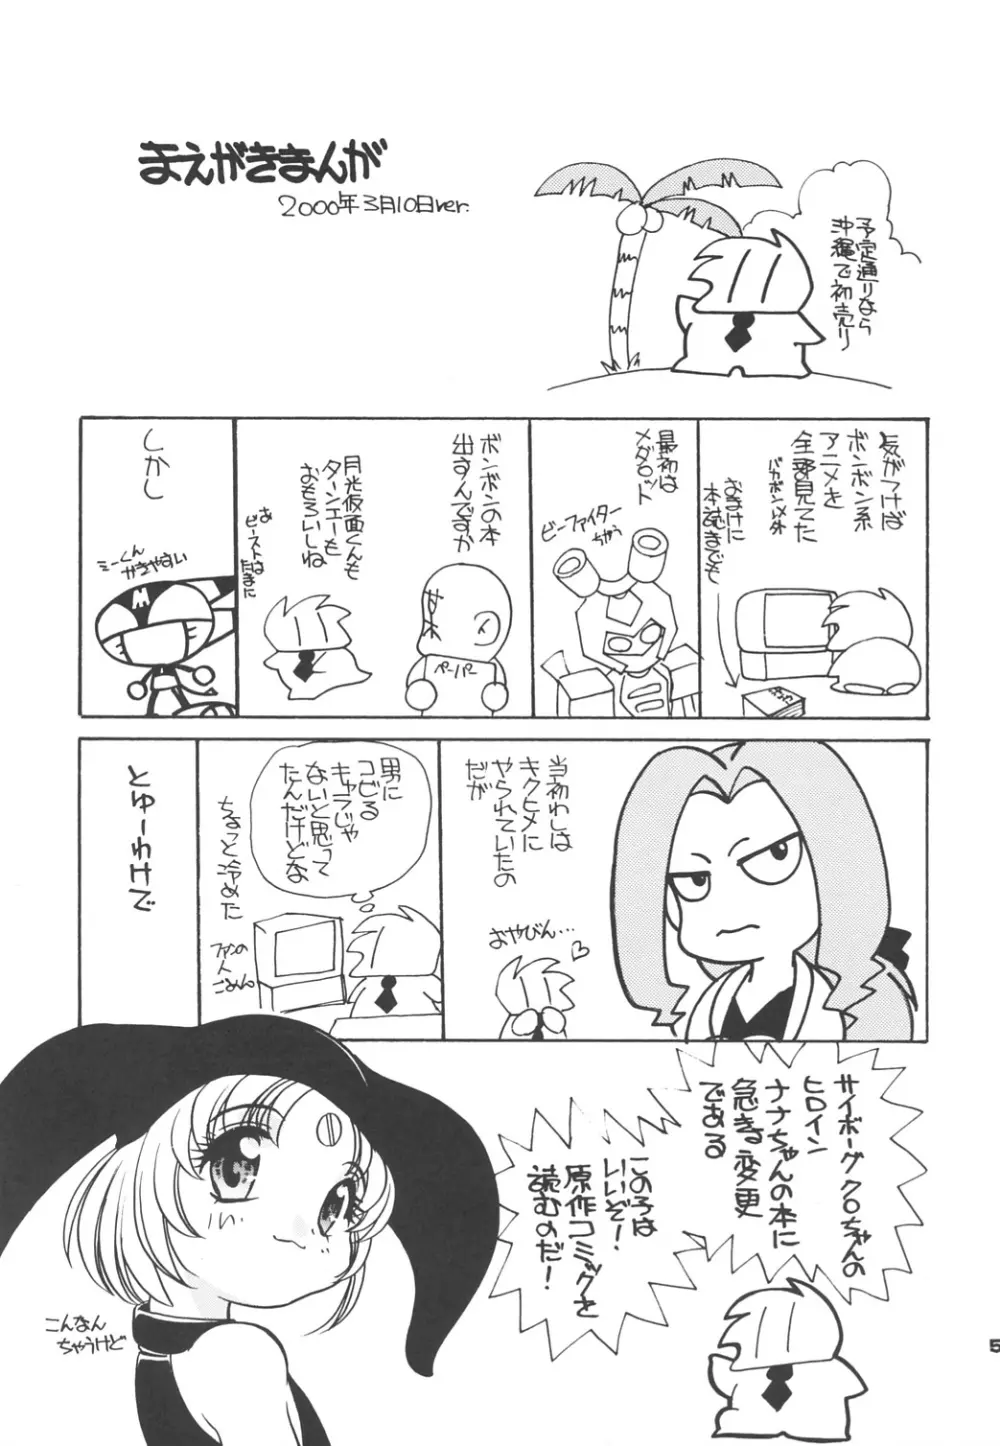 Nana-chan's Fan Book - page4